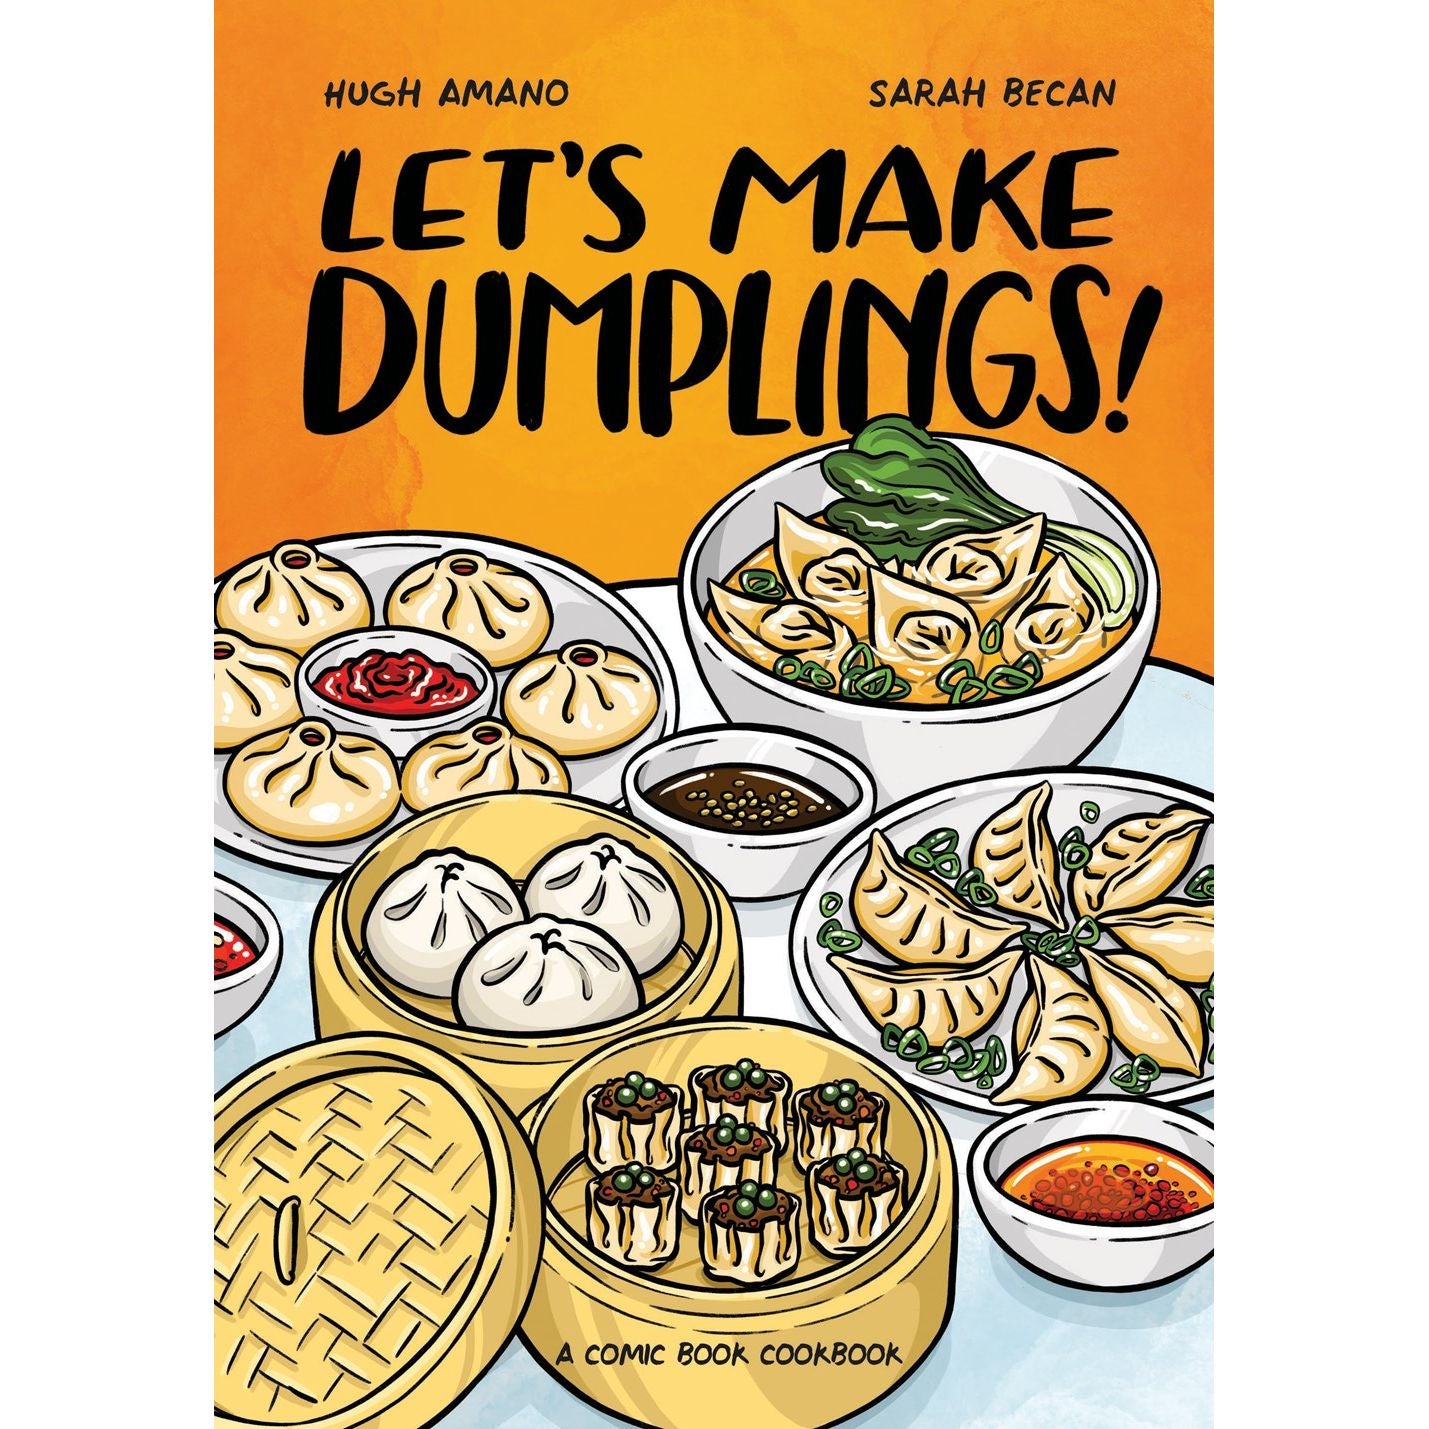 Let's Make Dumplings! (Hugh Amano & Sarah Becan)